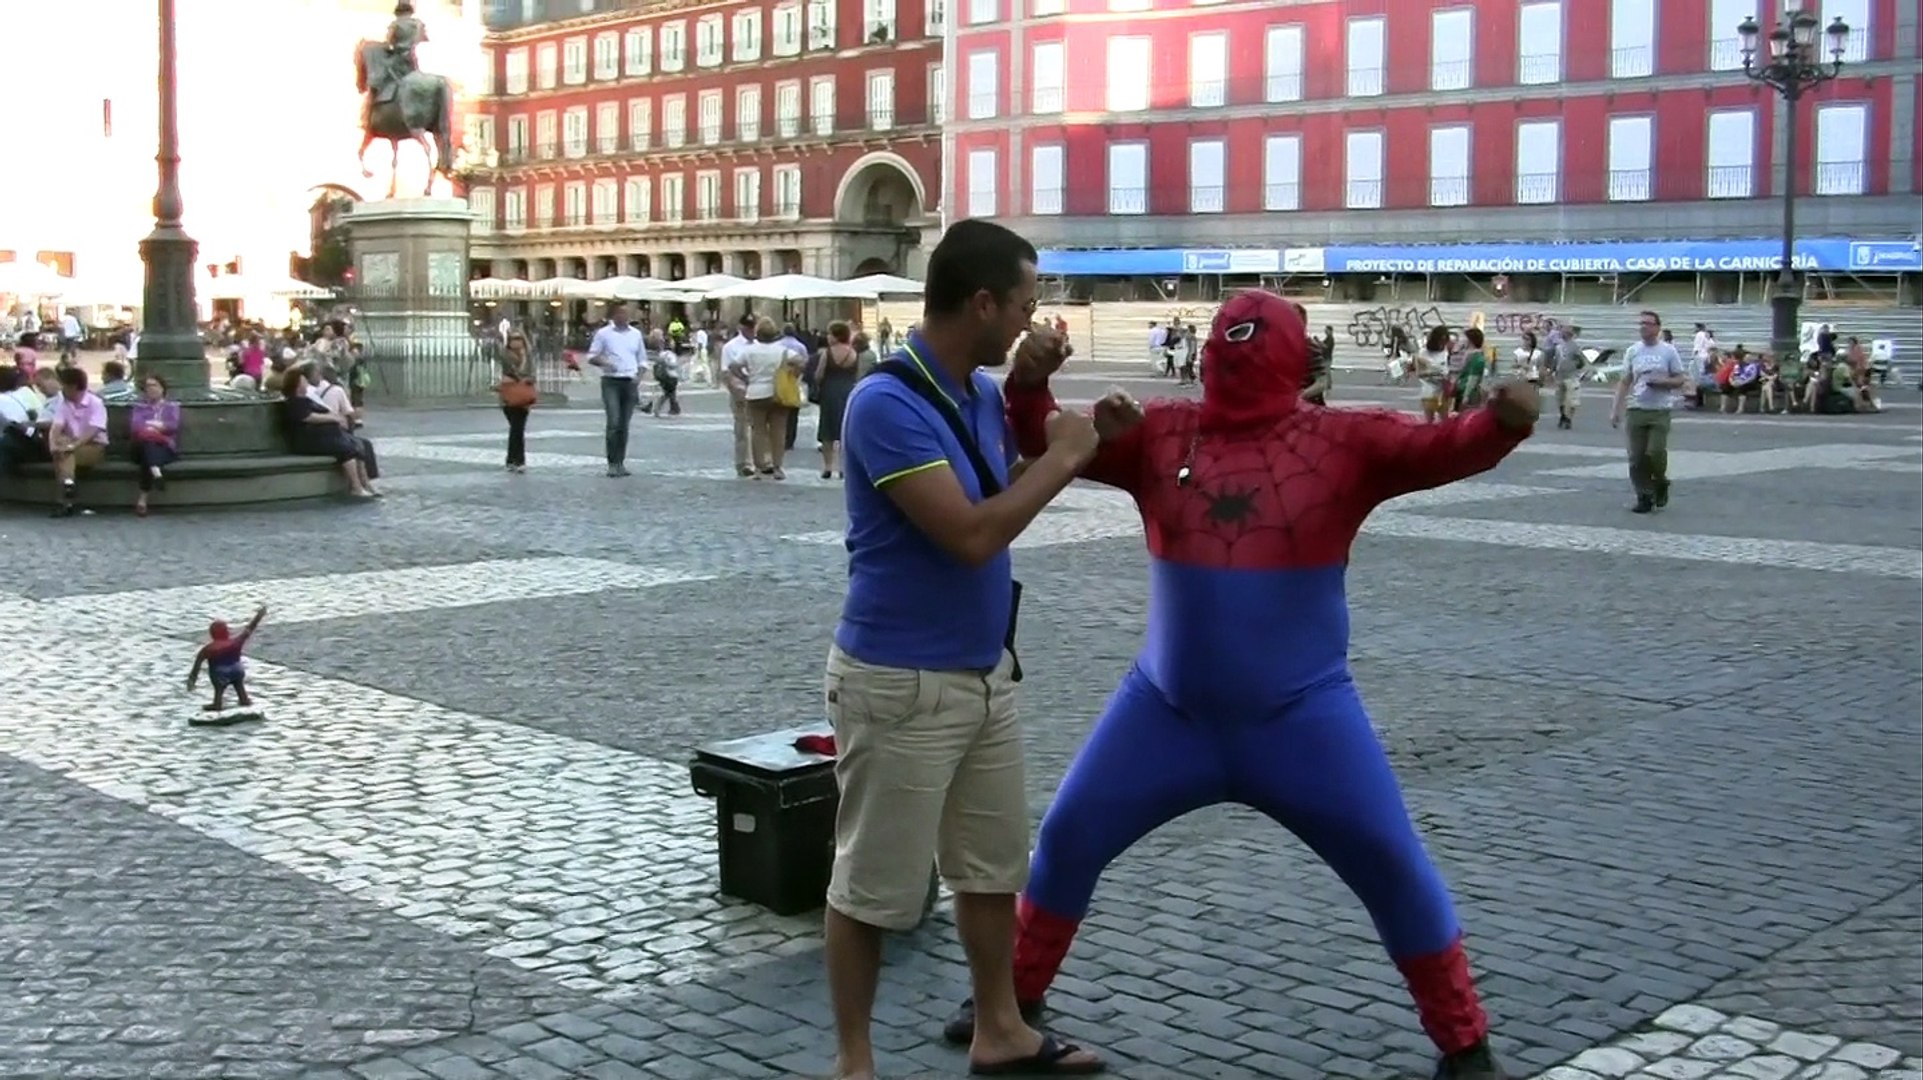 Spiderman-Gordo Plaza Mayor Madrid sept 2014 - Vidéo Dailymotion